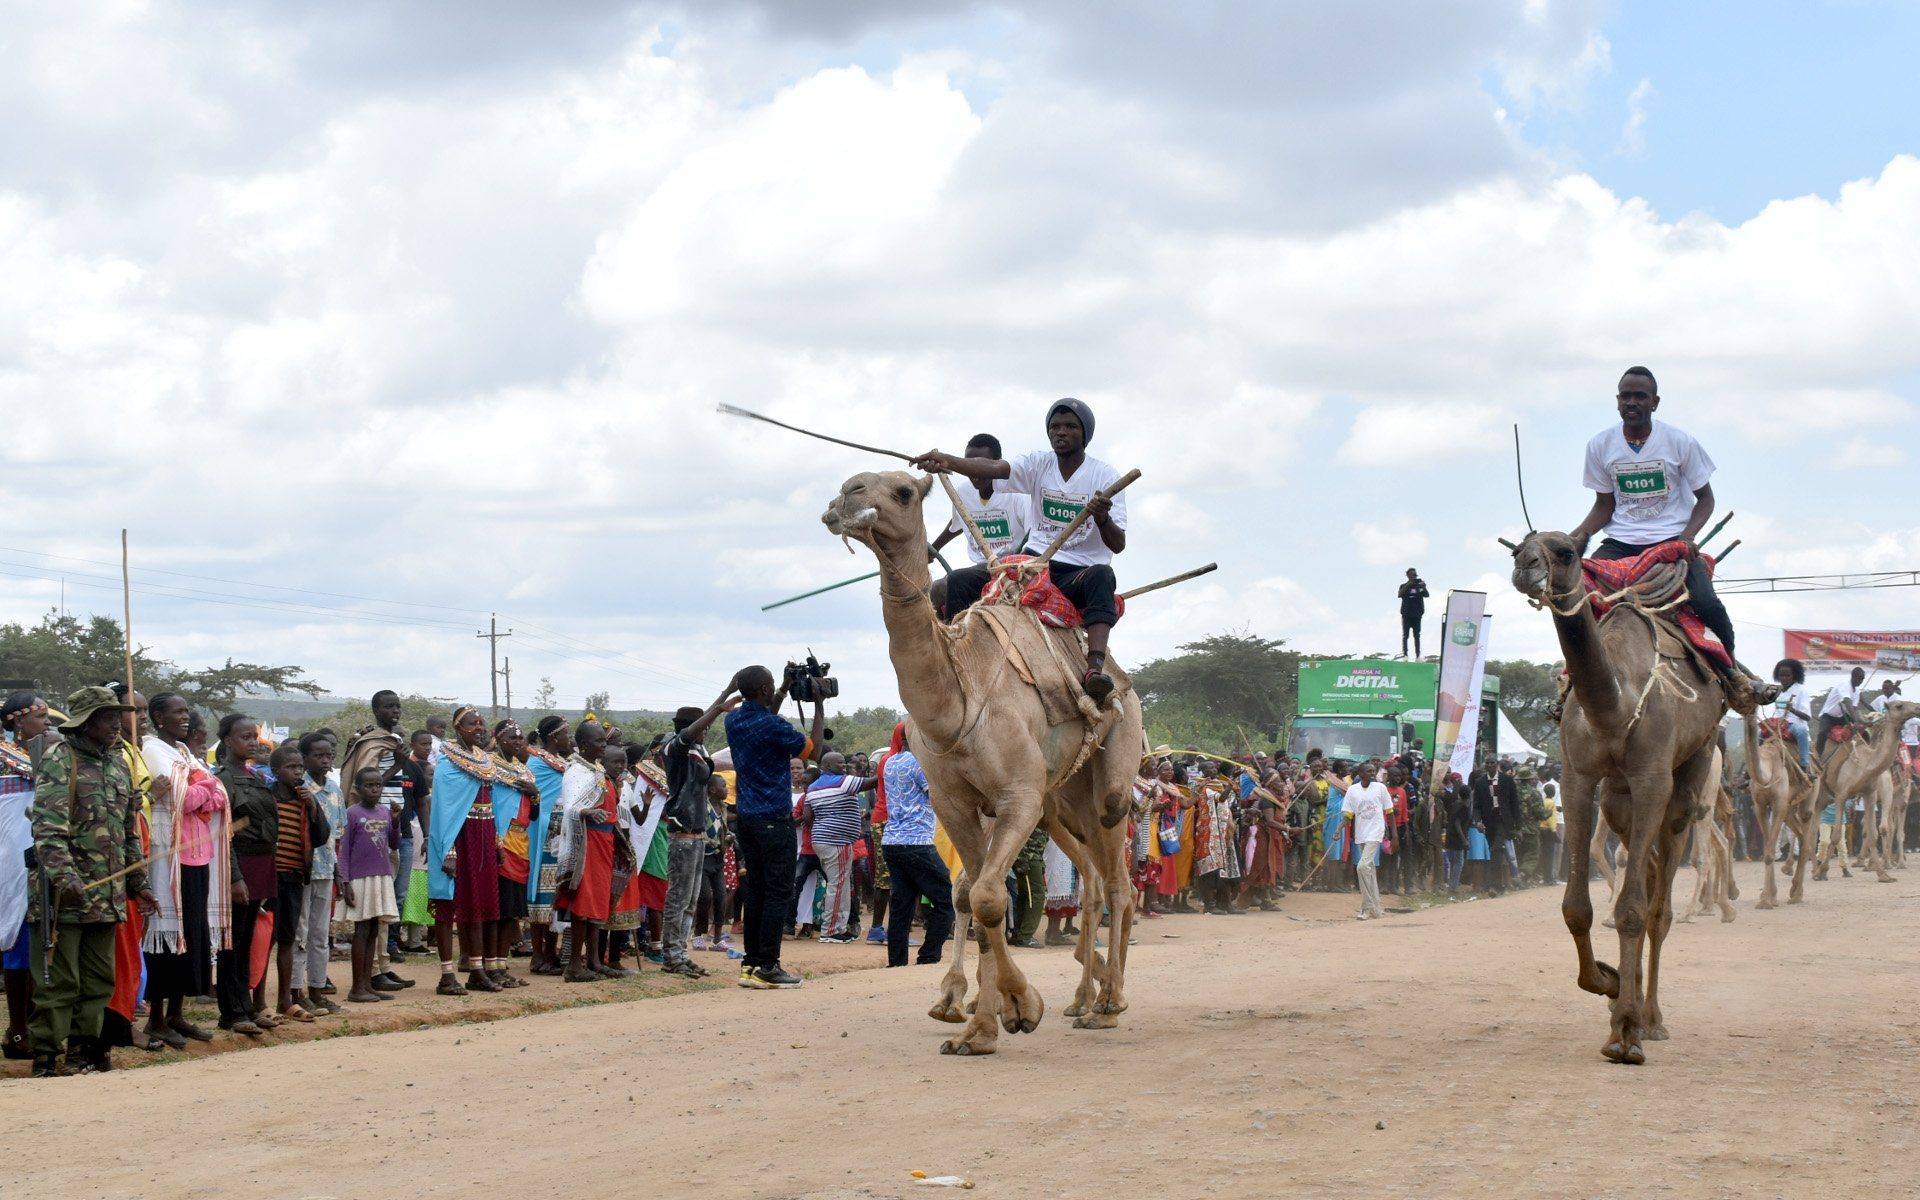 Conozca las costumbres indígenas de los Samburu y disfrute de las carreras de camellos en Samburu